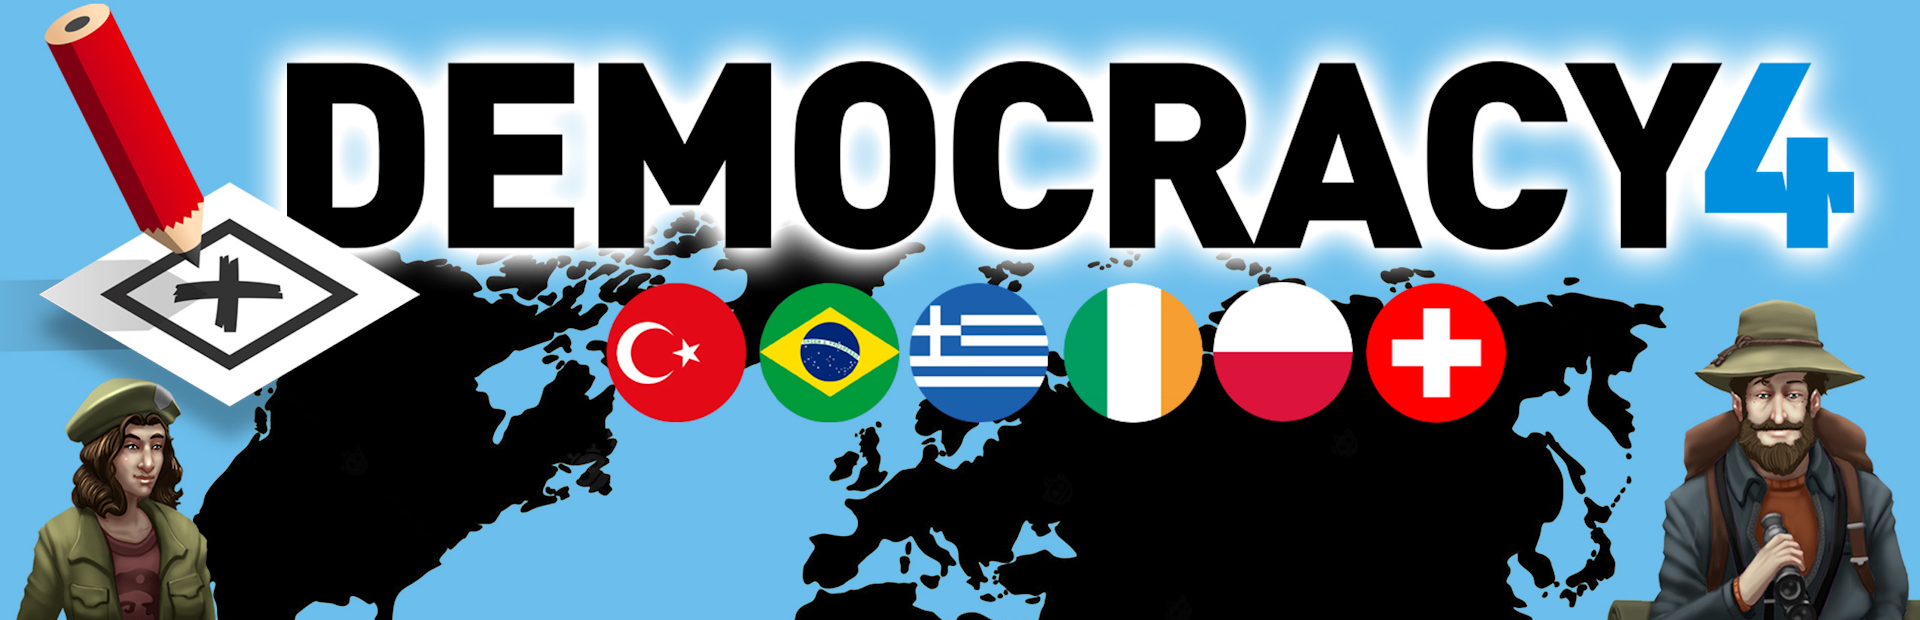 دانلود بازی Democracy 4 برای پی سی | گیمباتو